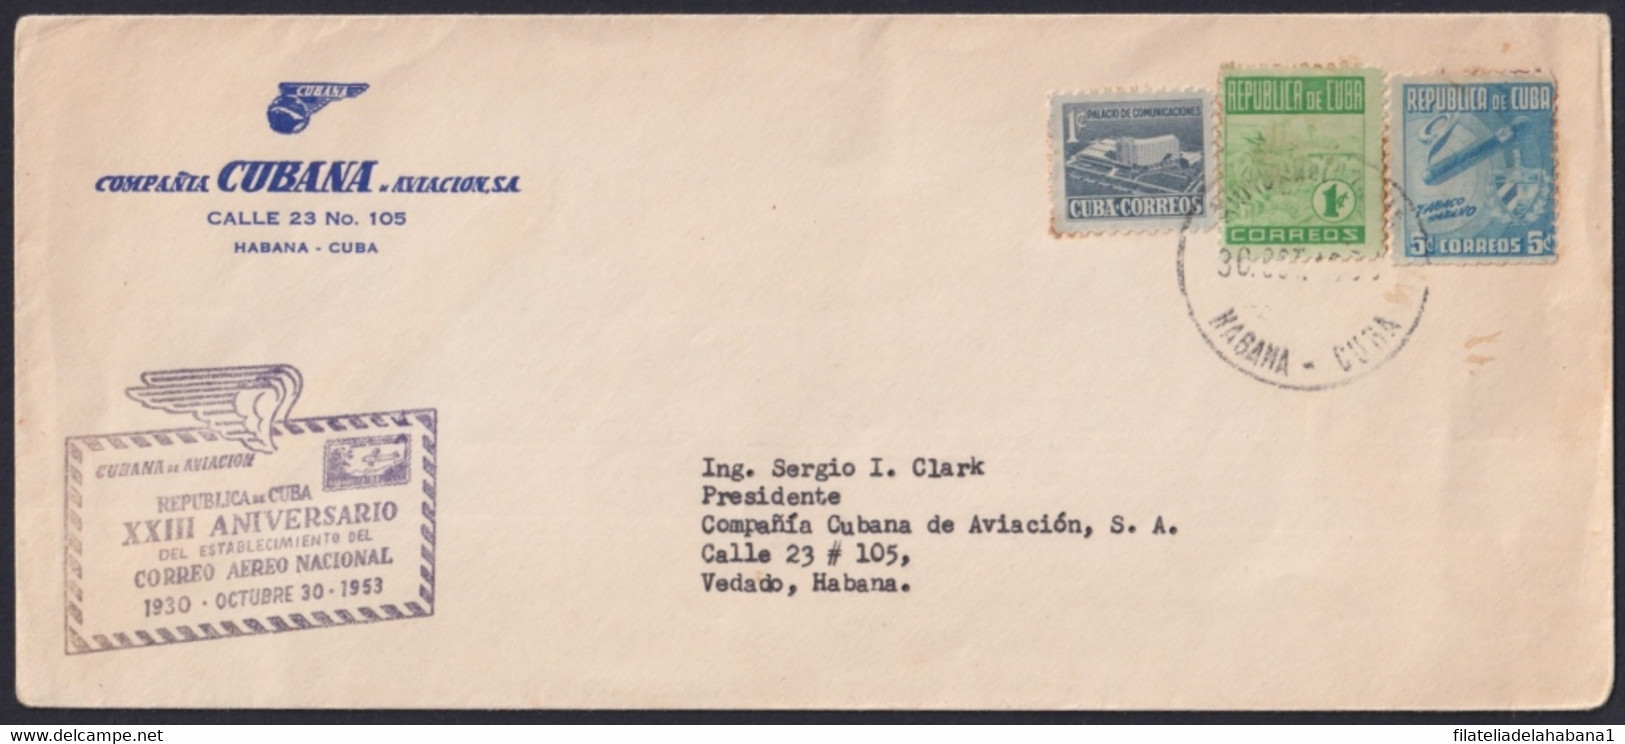 1953-CE-15 CUBA REPUBLICA LG-2142 XXIII ANIV NATIONAL AIR MAIL CANCEL COVER. - Briefe U. Dokumente